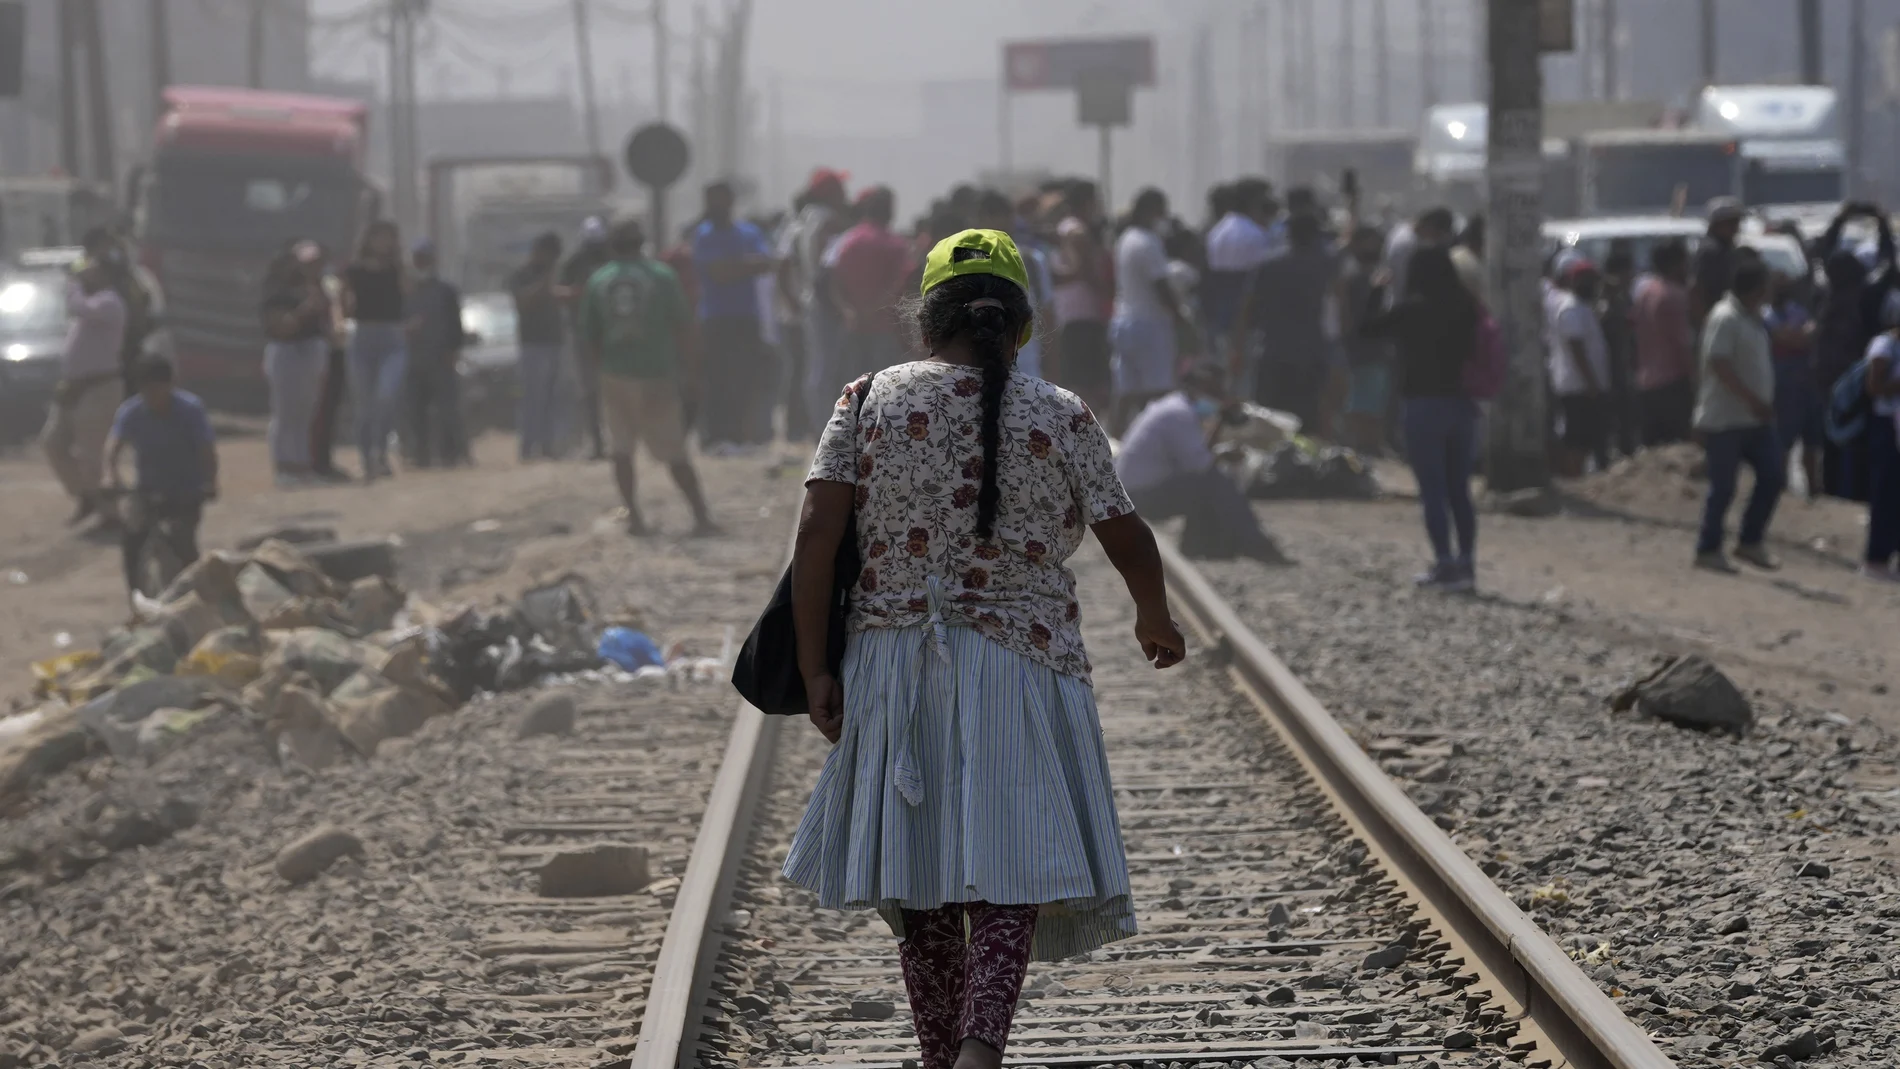 Residentes caminan a lo largo de la Carretera Central mientras está bloqueada por camiones y autobuses durante una huelga de transporte en Huaycán, en las afueras de Lima, Perú, el lunes 4 de abril de 2022.